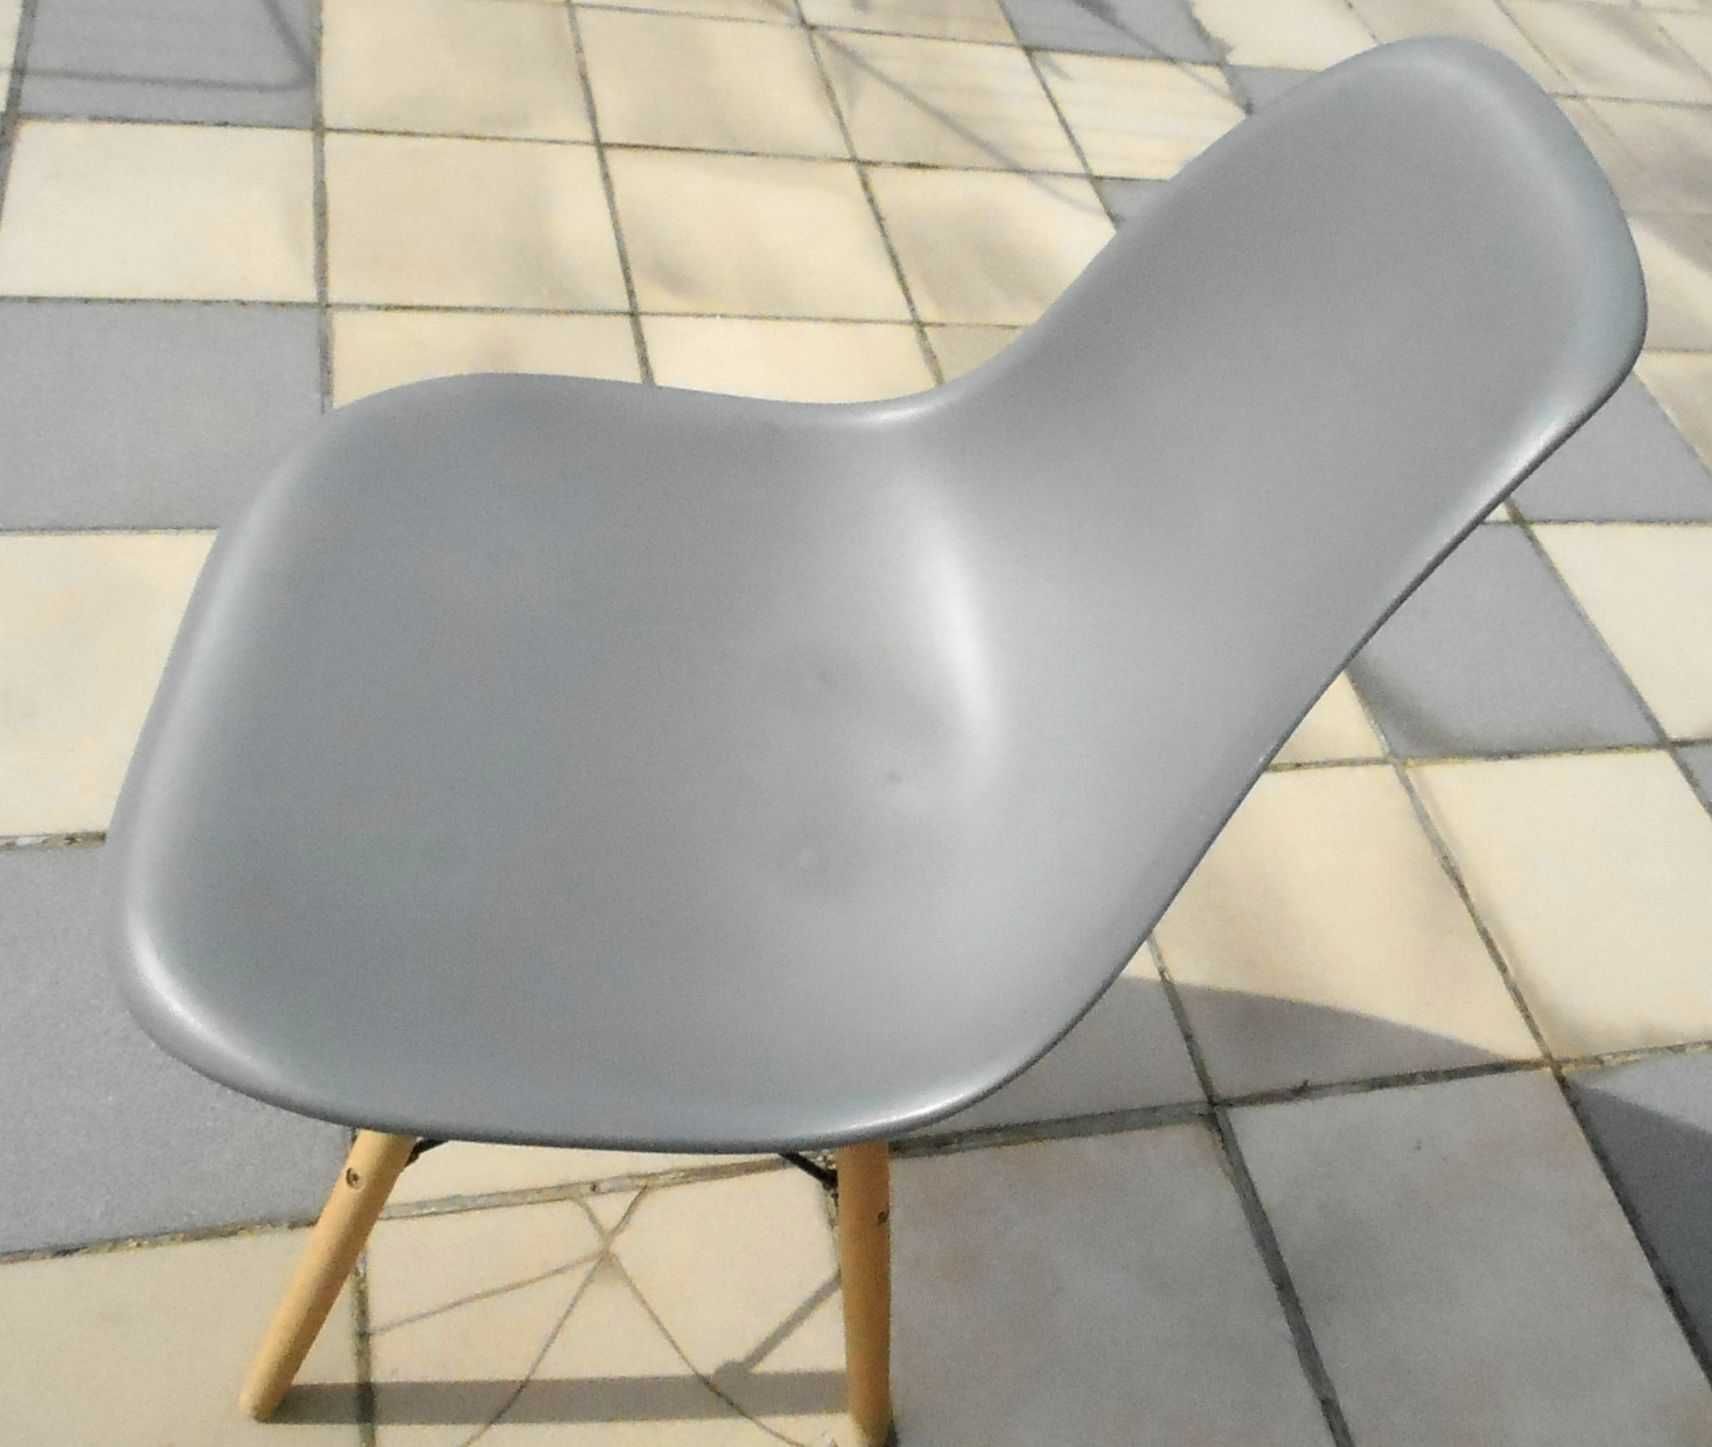 Krzesło typu skandynawskiego
Siedzisko z oparciem polipropylen